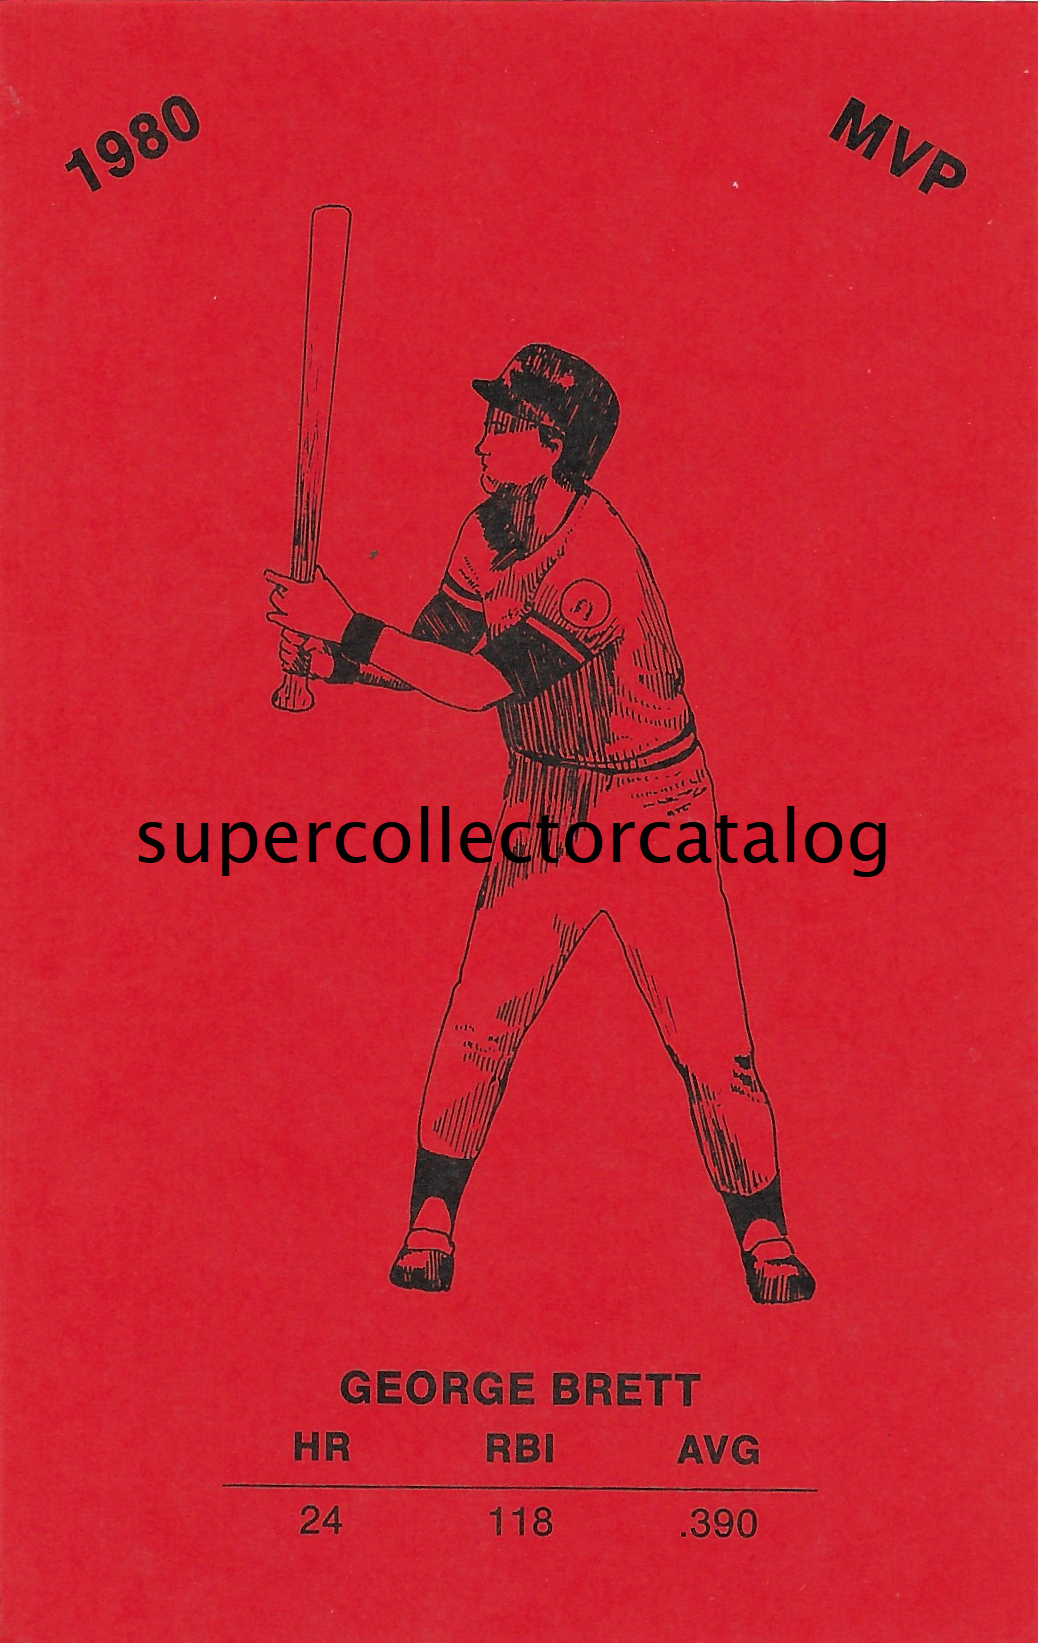 www.supercollectorcatalog.com